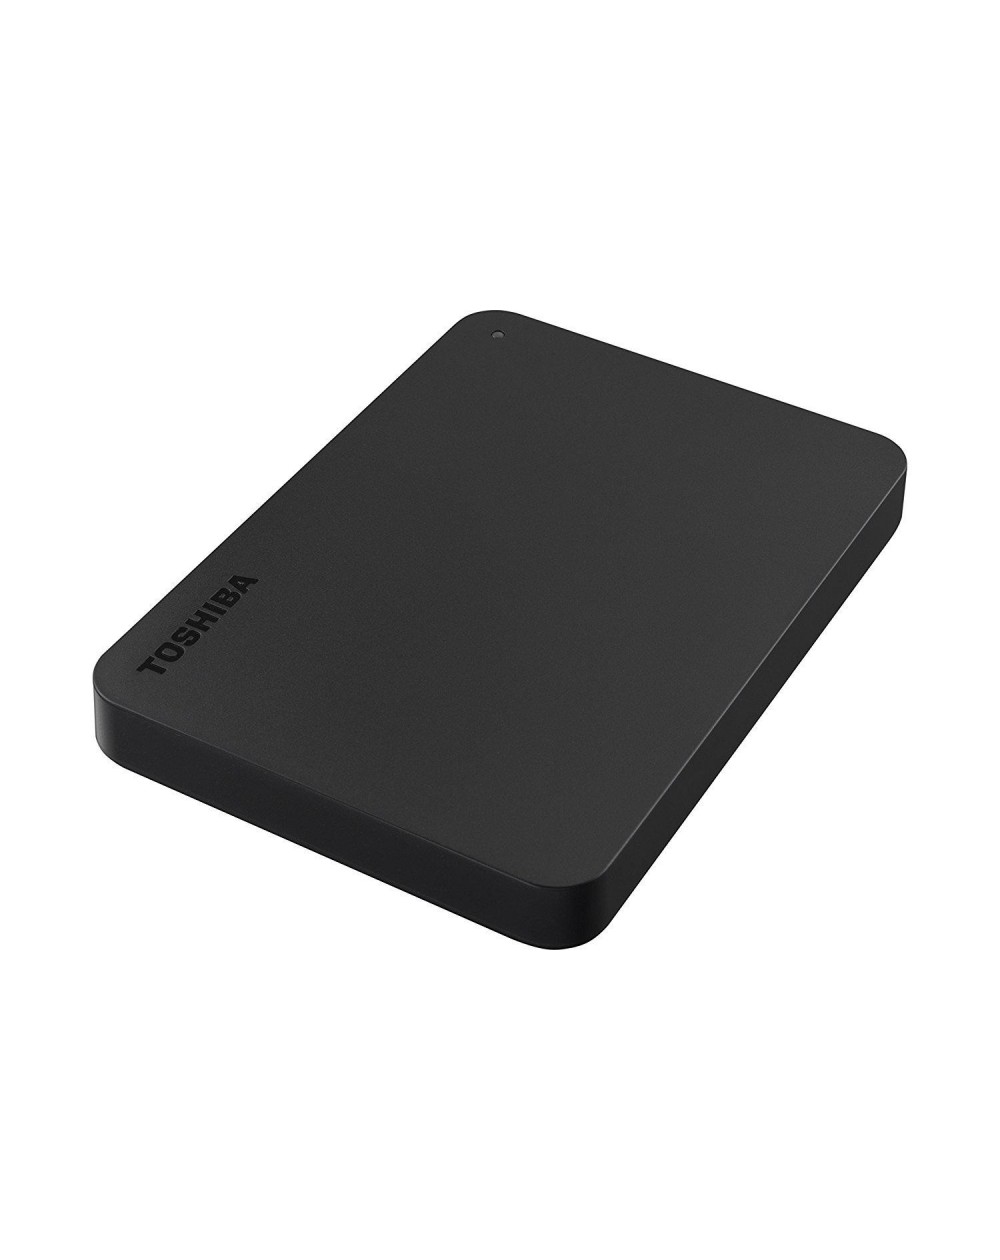 Disque Dur Externe Toshiba Canvio Basics, 4To, Noir, USB 3.2. G en 1